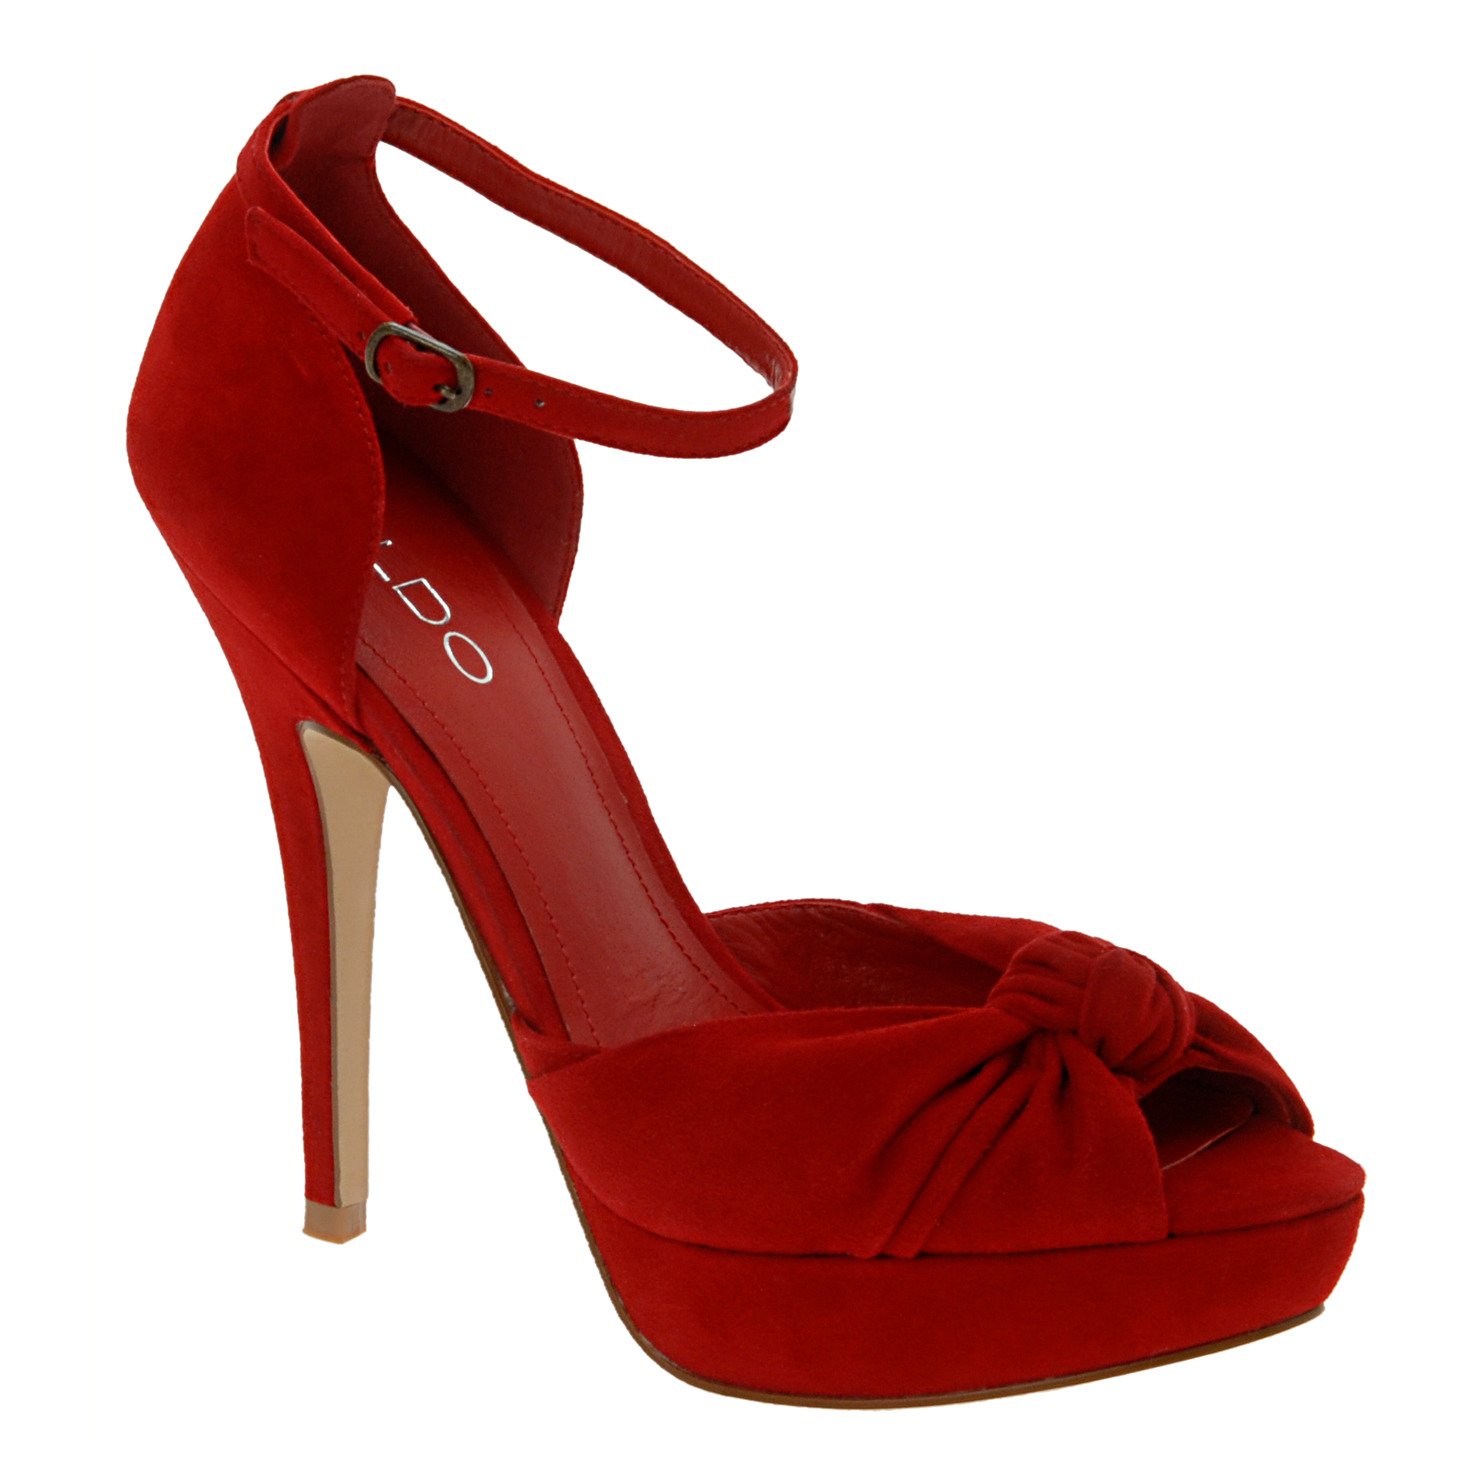 Aldo+red+shoes.jpg